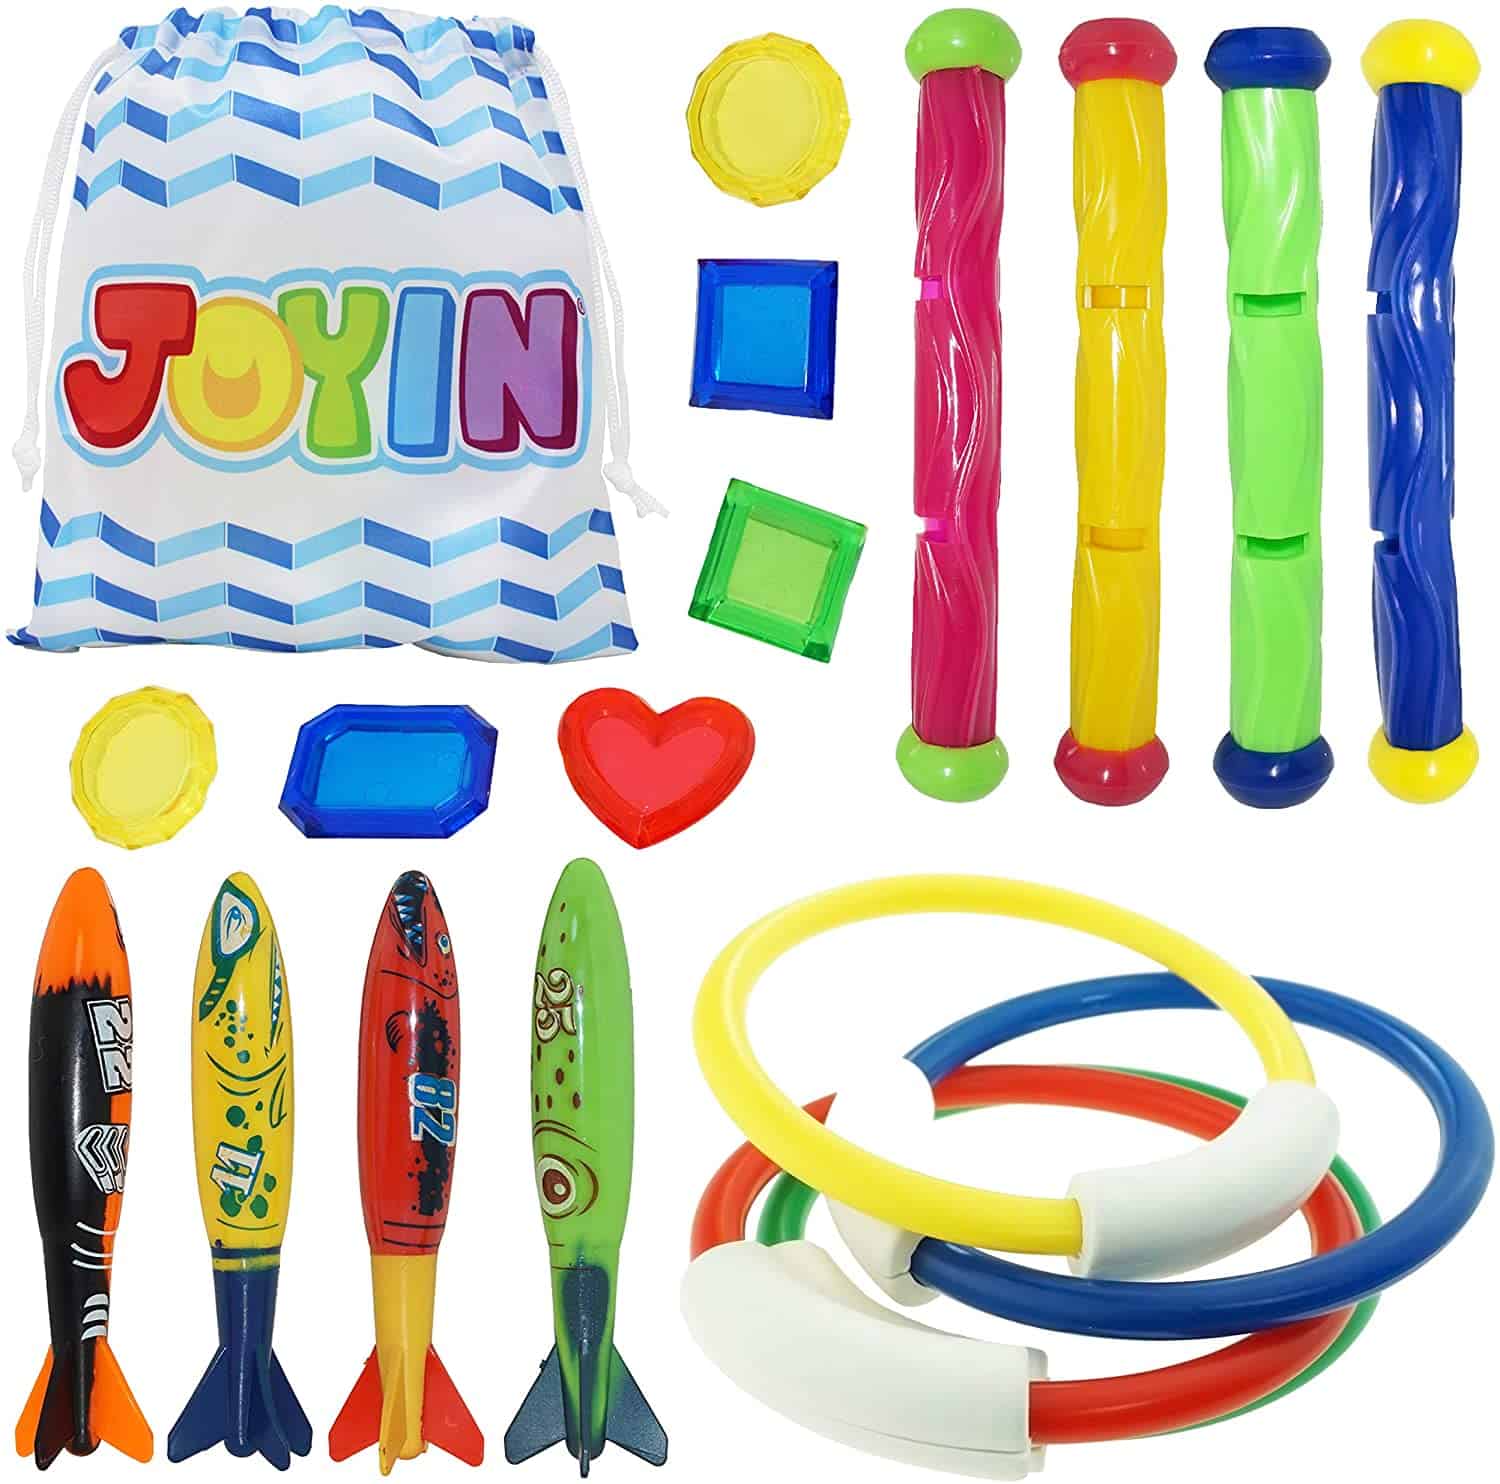 Los mejores juguetes de playa a partir de 6 años- JOYIN Toys Underwater